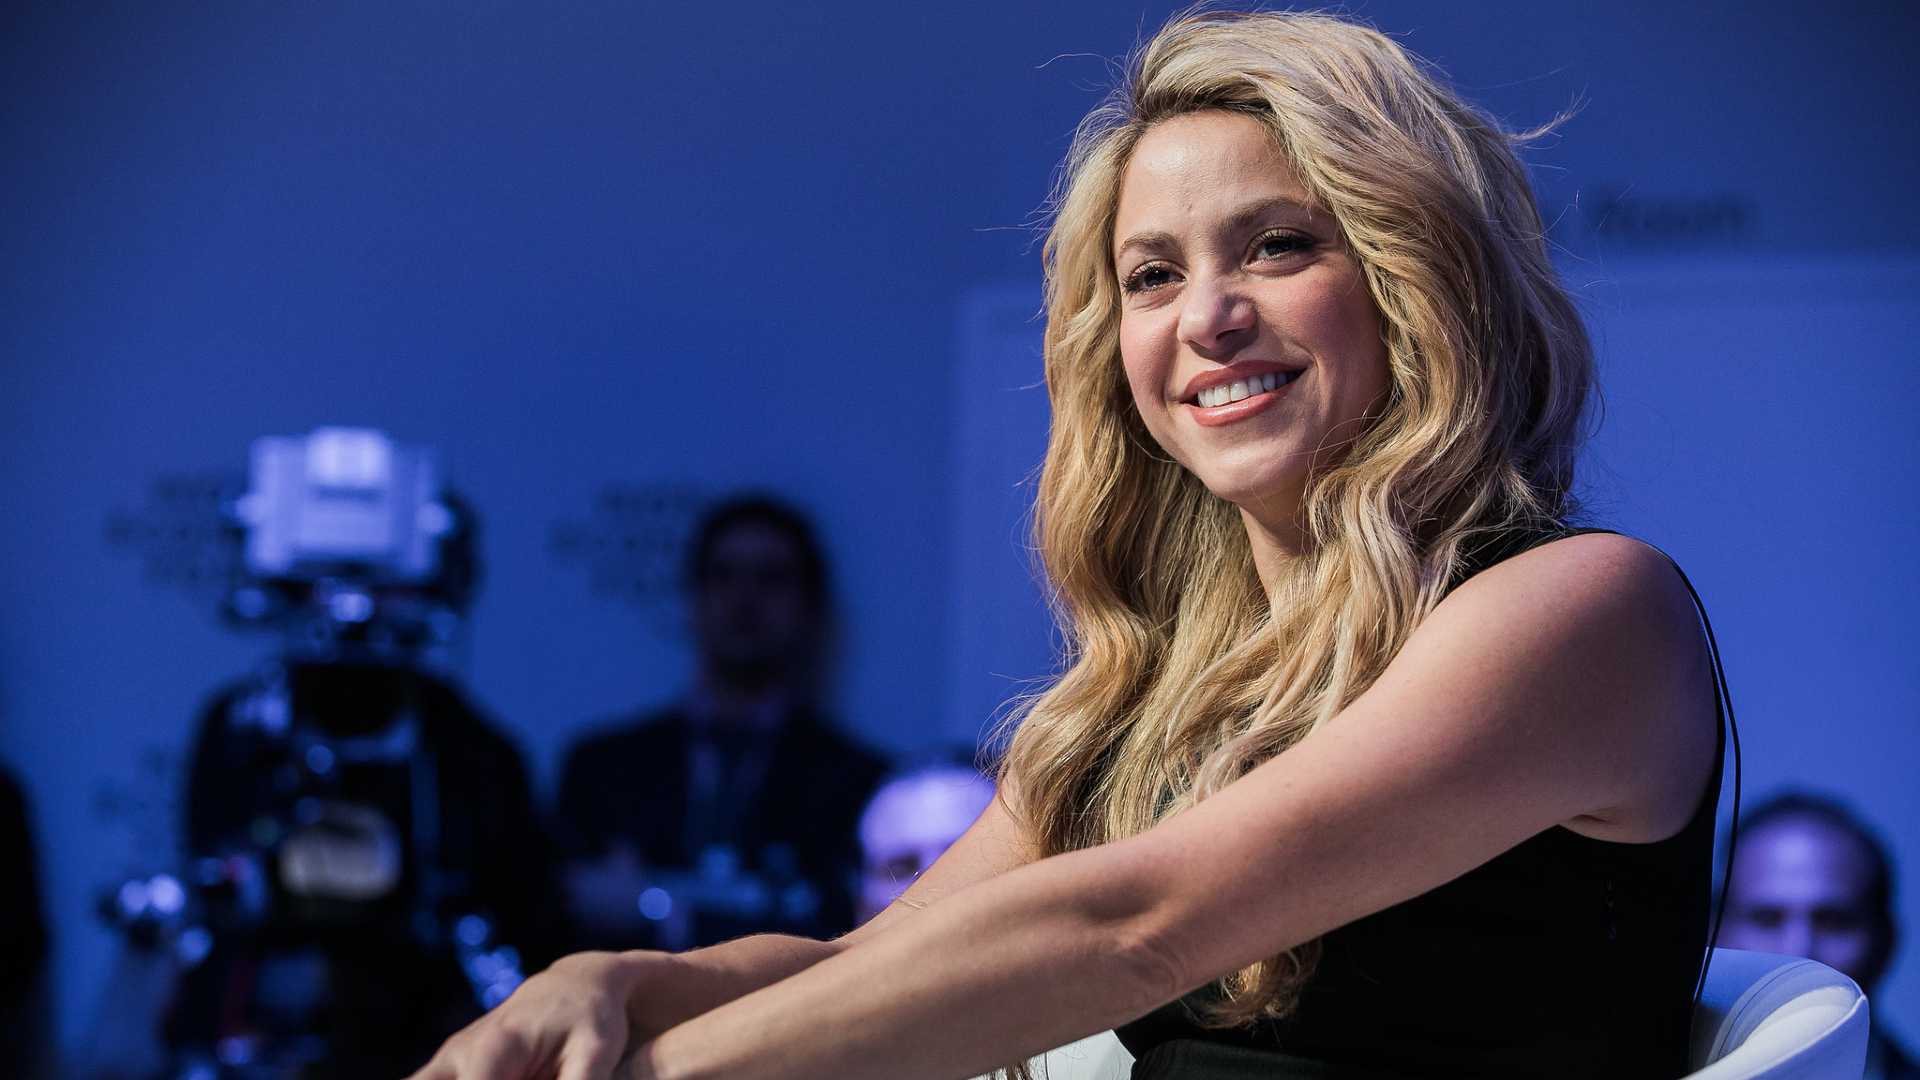 Shakira é acusada de sonegar 6 milhões de euros em impostos na Espanha